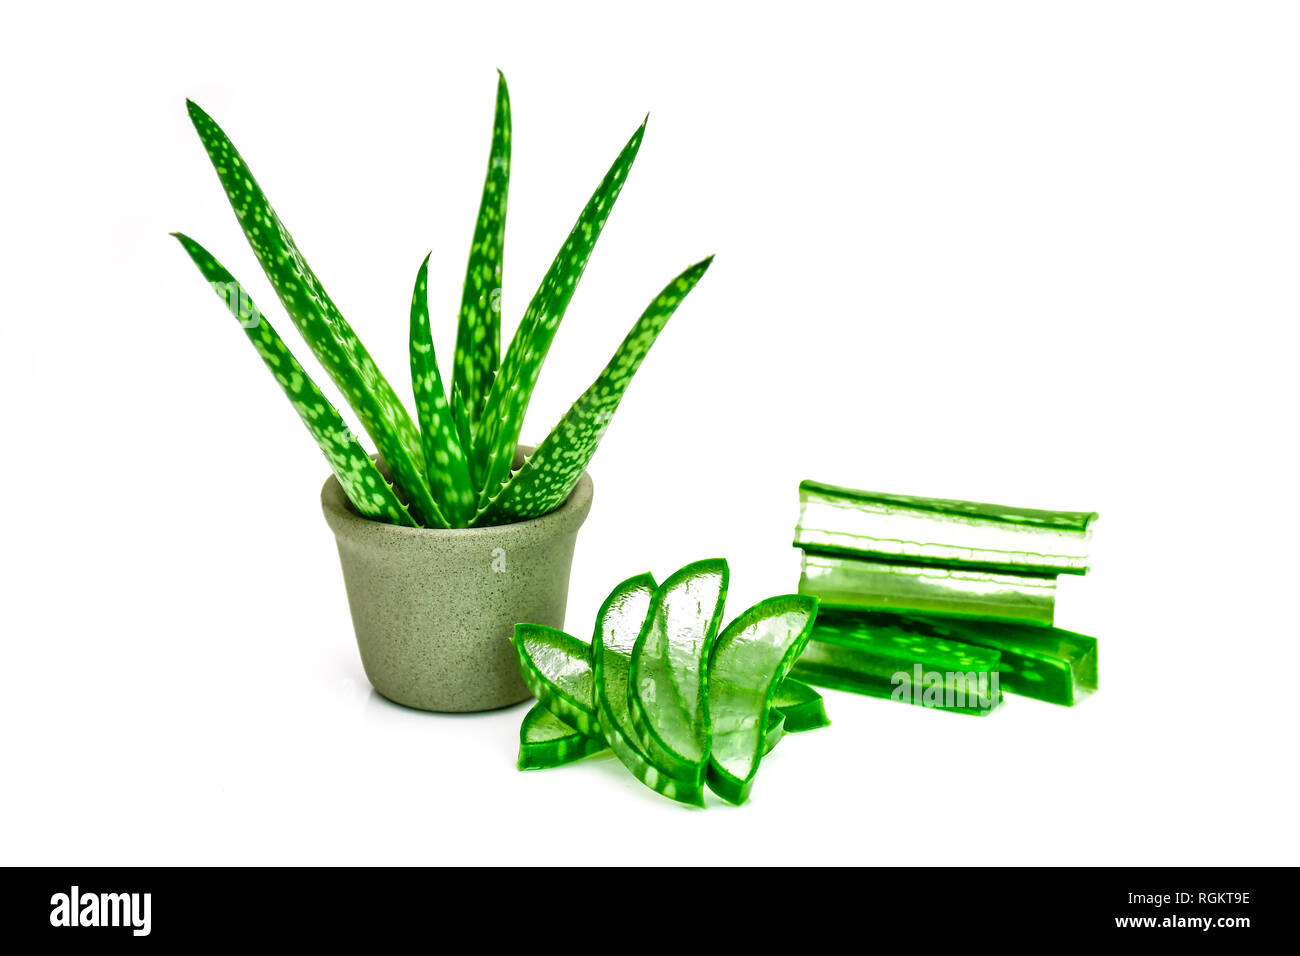 Aloe Vera Leaves And Cut Aloe Vera Leaves Shows Transparent Aloe